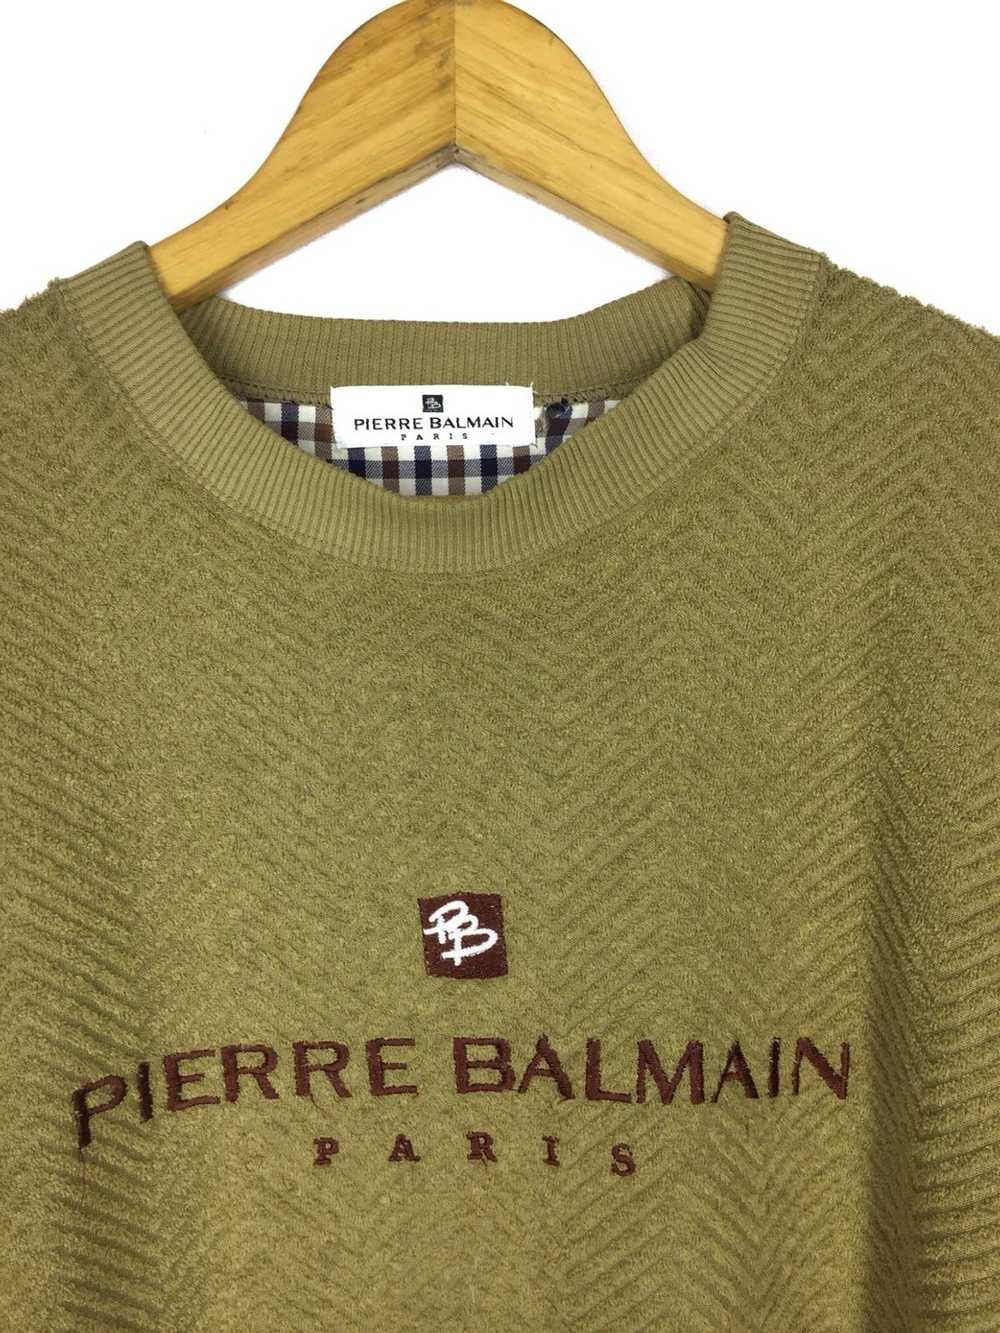 Balmain × Pierre Balmain Pierre Balmain Sweatshirt - image 4